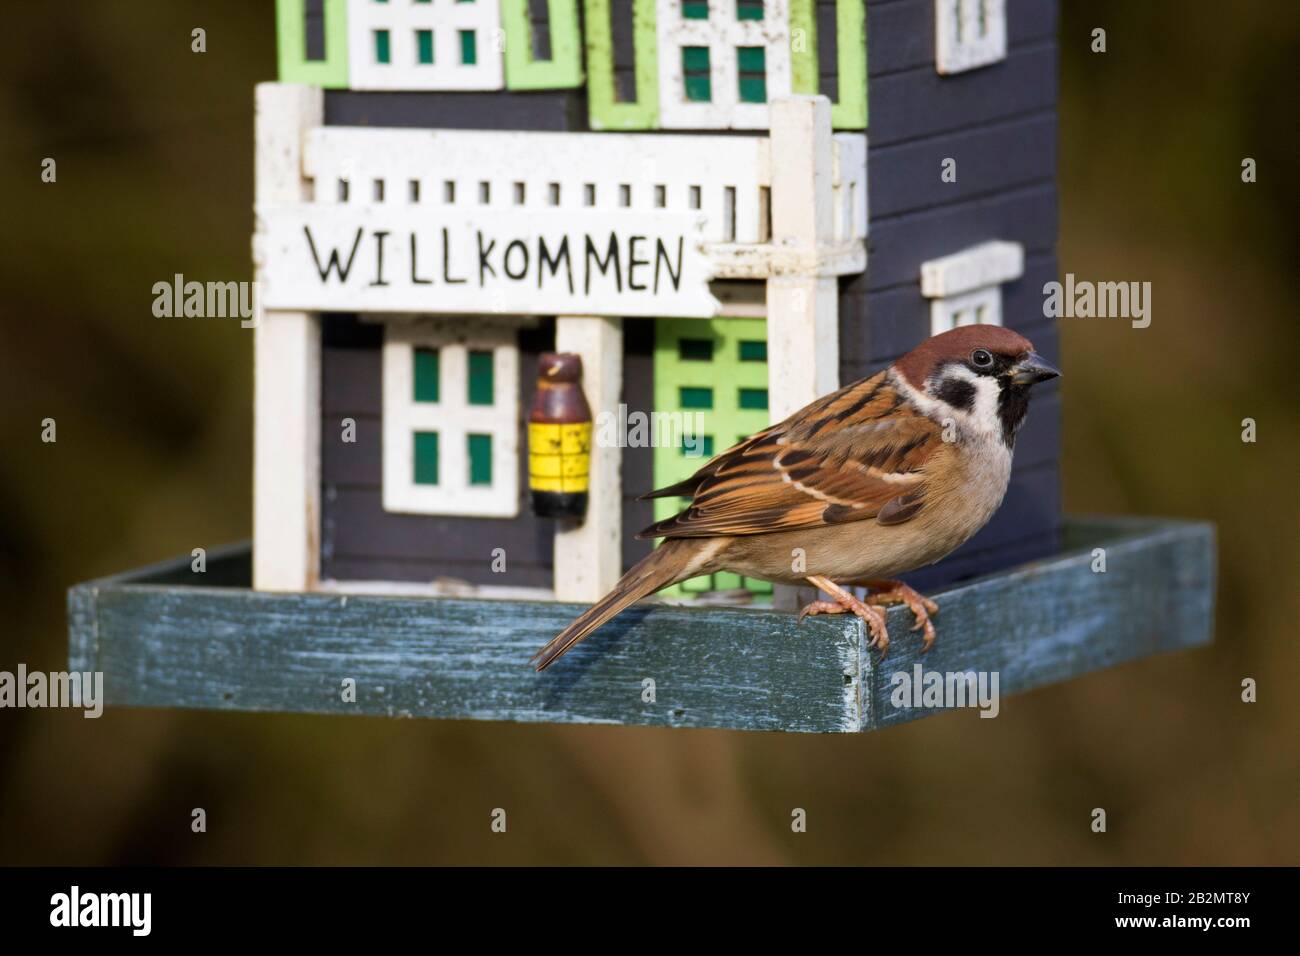 Sparrow d'arbre eurasien (Passer montanus) manger des graines du jardin décoré Birdfeeder / oiseau de convoyeur Banque D'Images